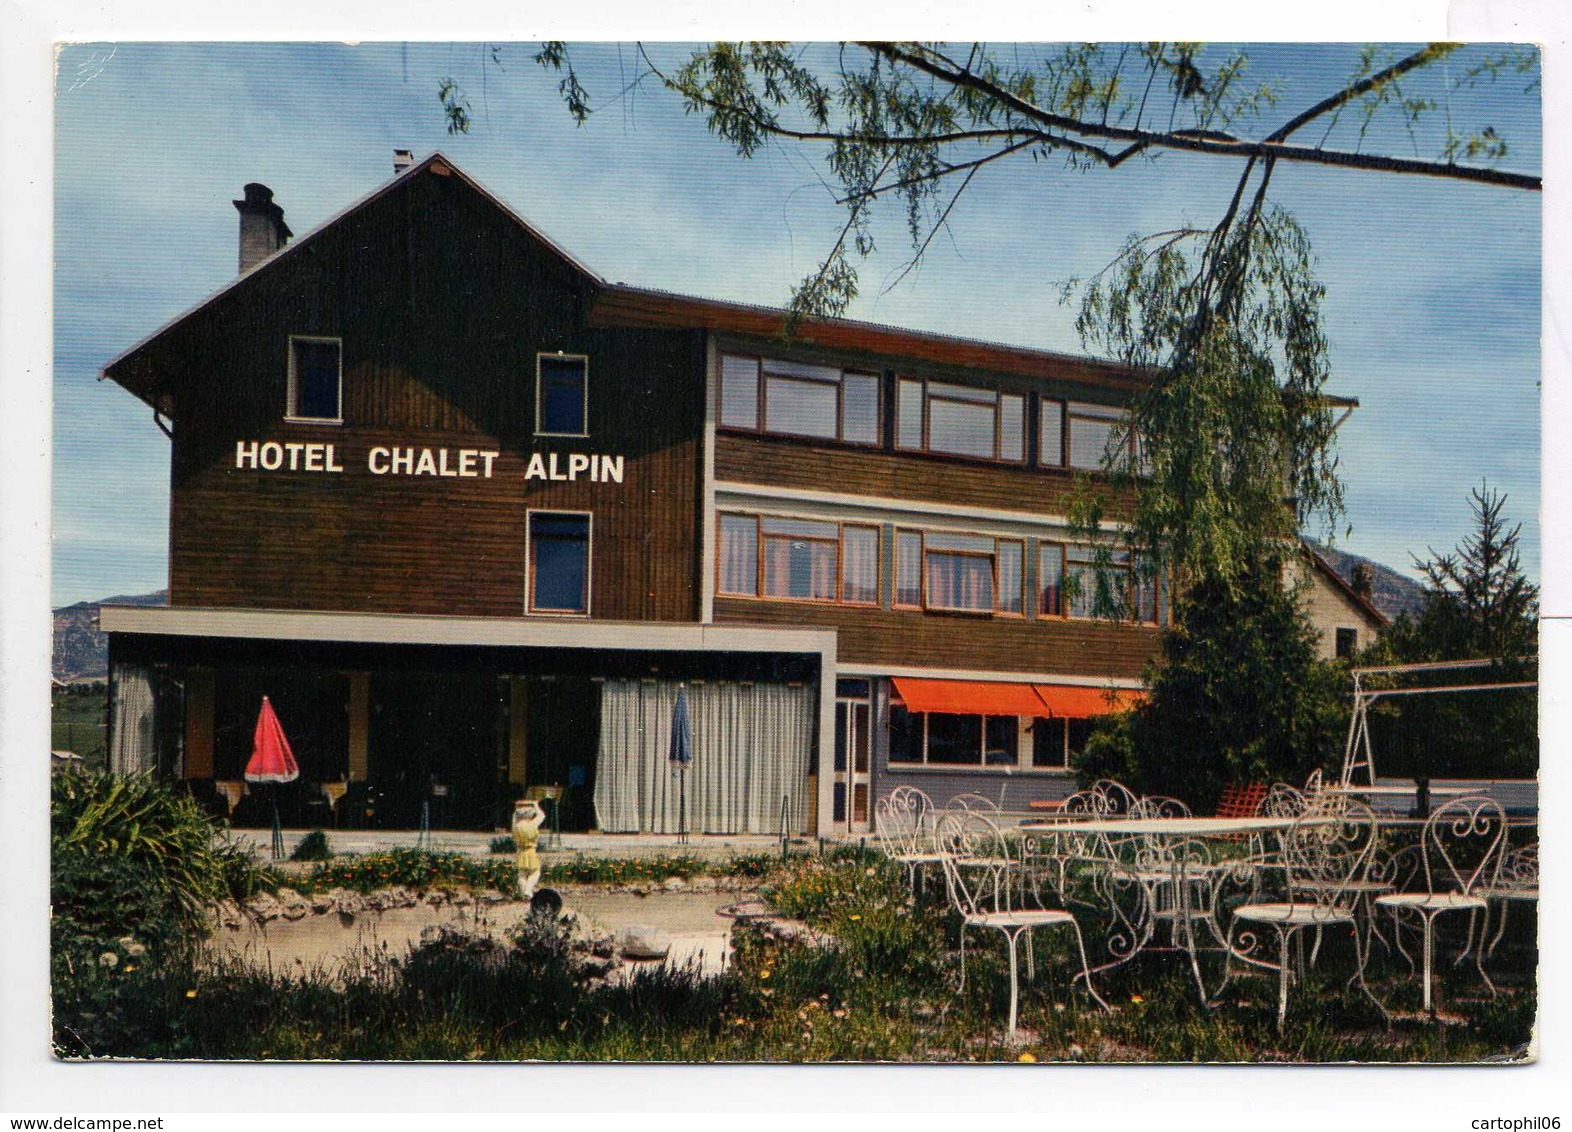 - CPSM GUILLESTRE (05) - HOTEL CHALET ALPIN 1973 - J. JAUME Prop. - Editions CAP - - Guillestre